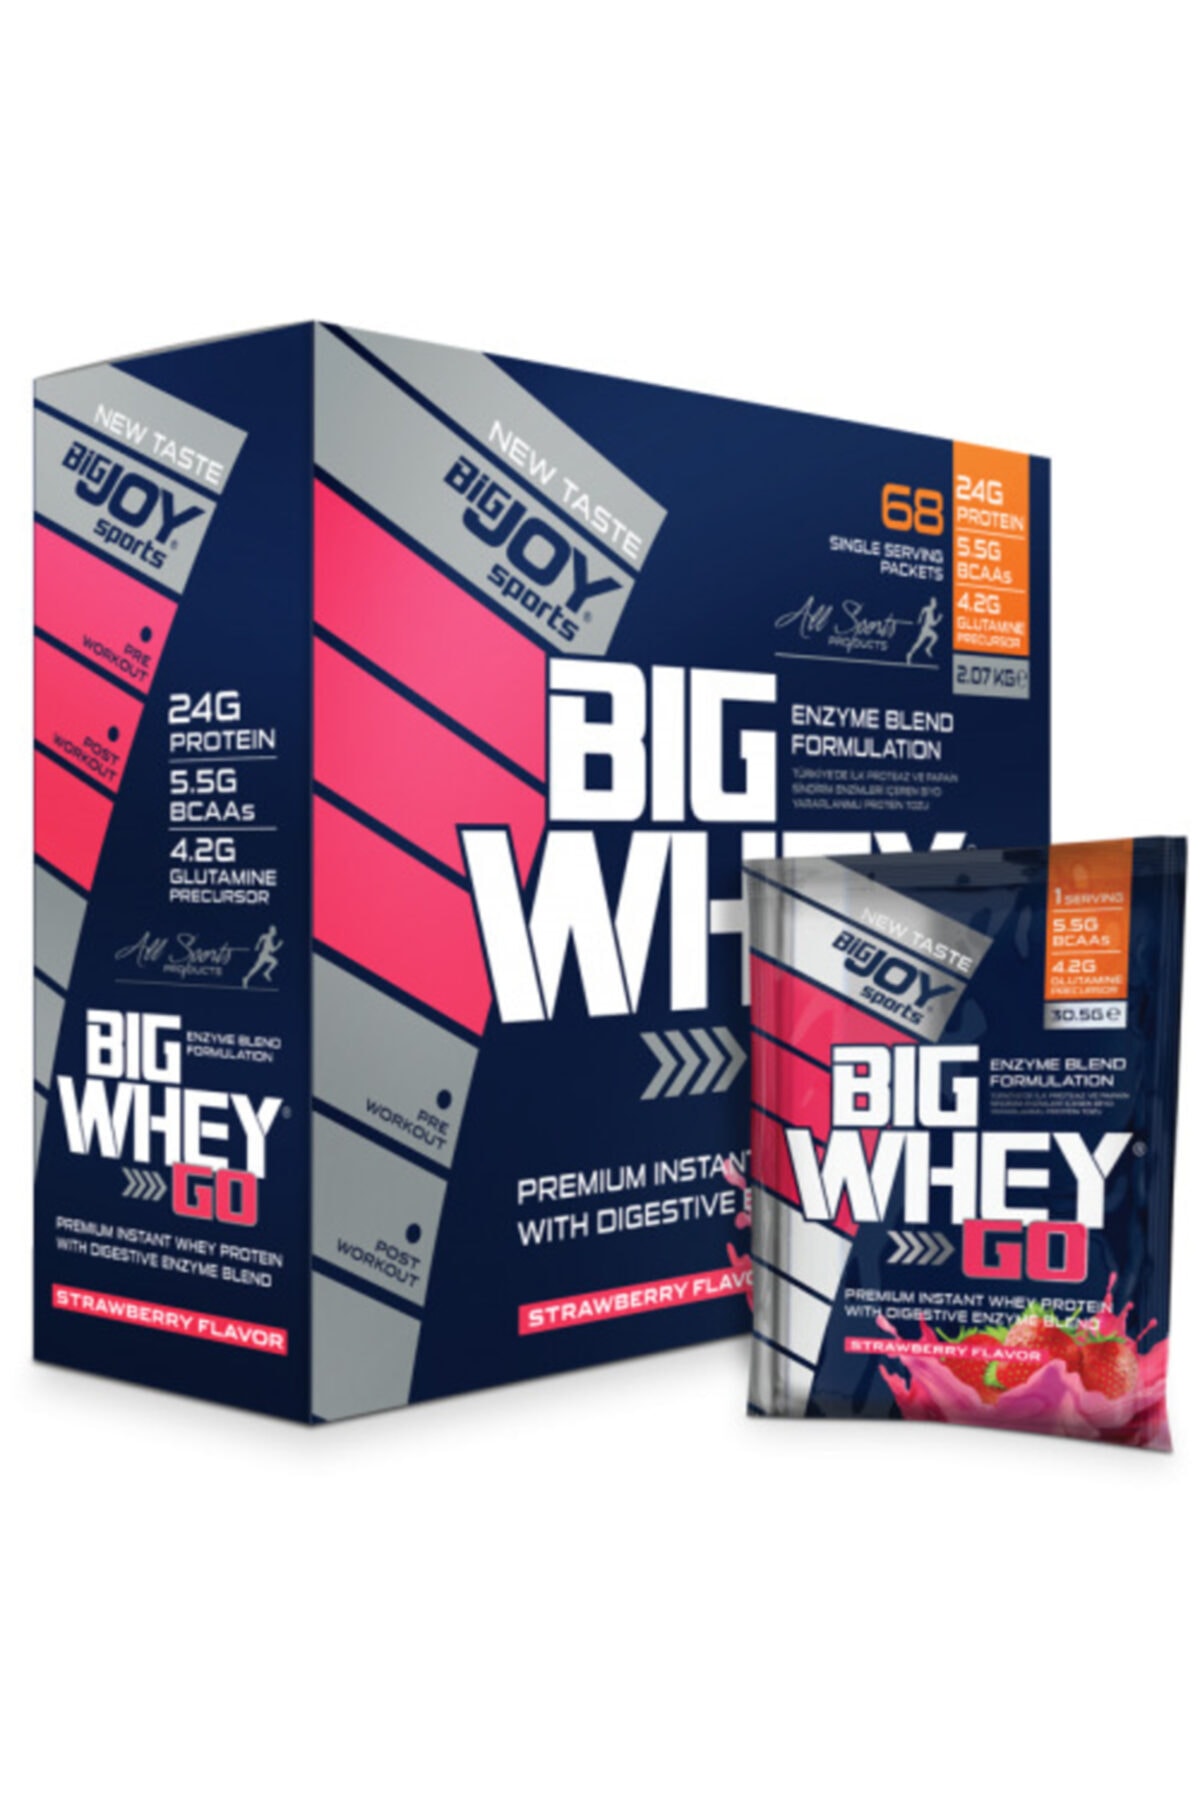 Bigjoy Sports Protein Tozu Çilek Whey Go Protein 2070 Gr 68 Saşe